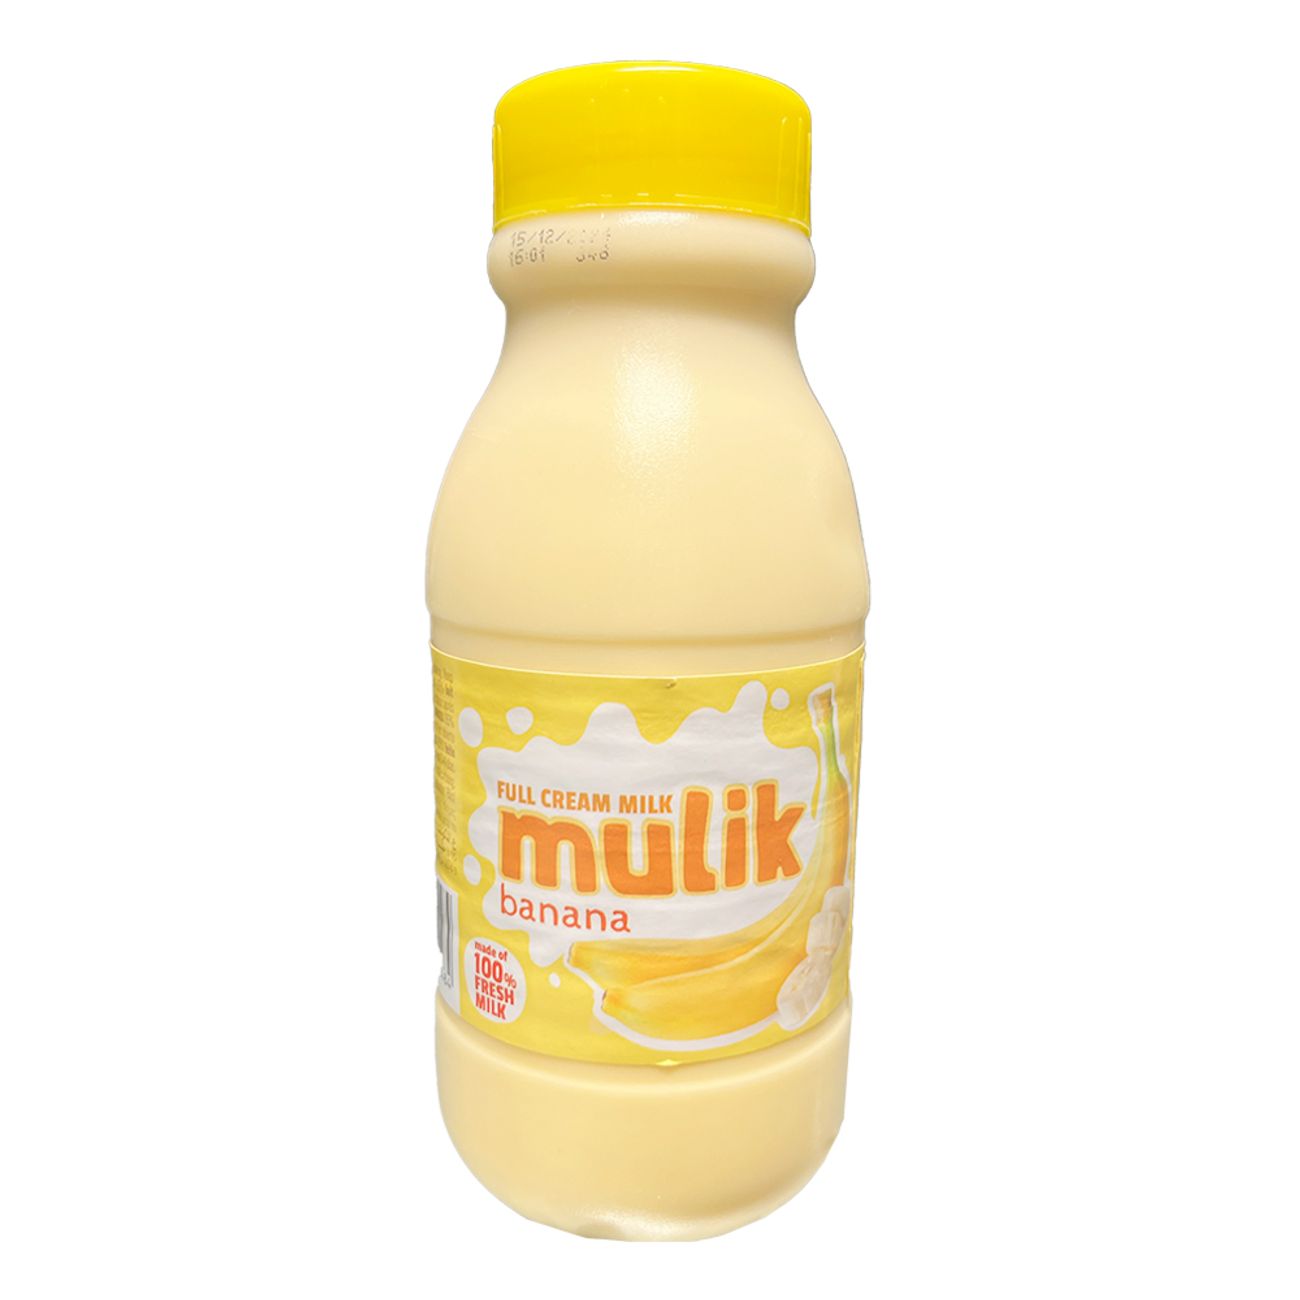 mulik-mjolkdryck-37193-9